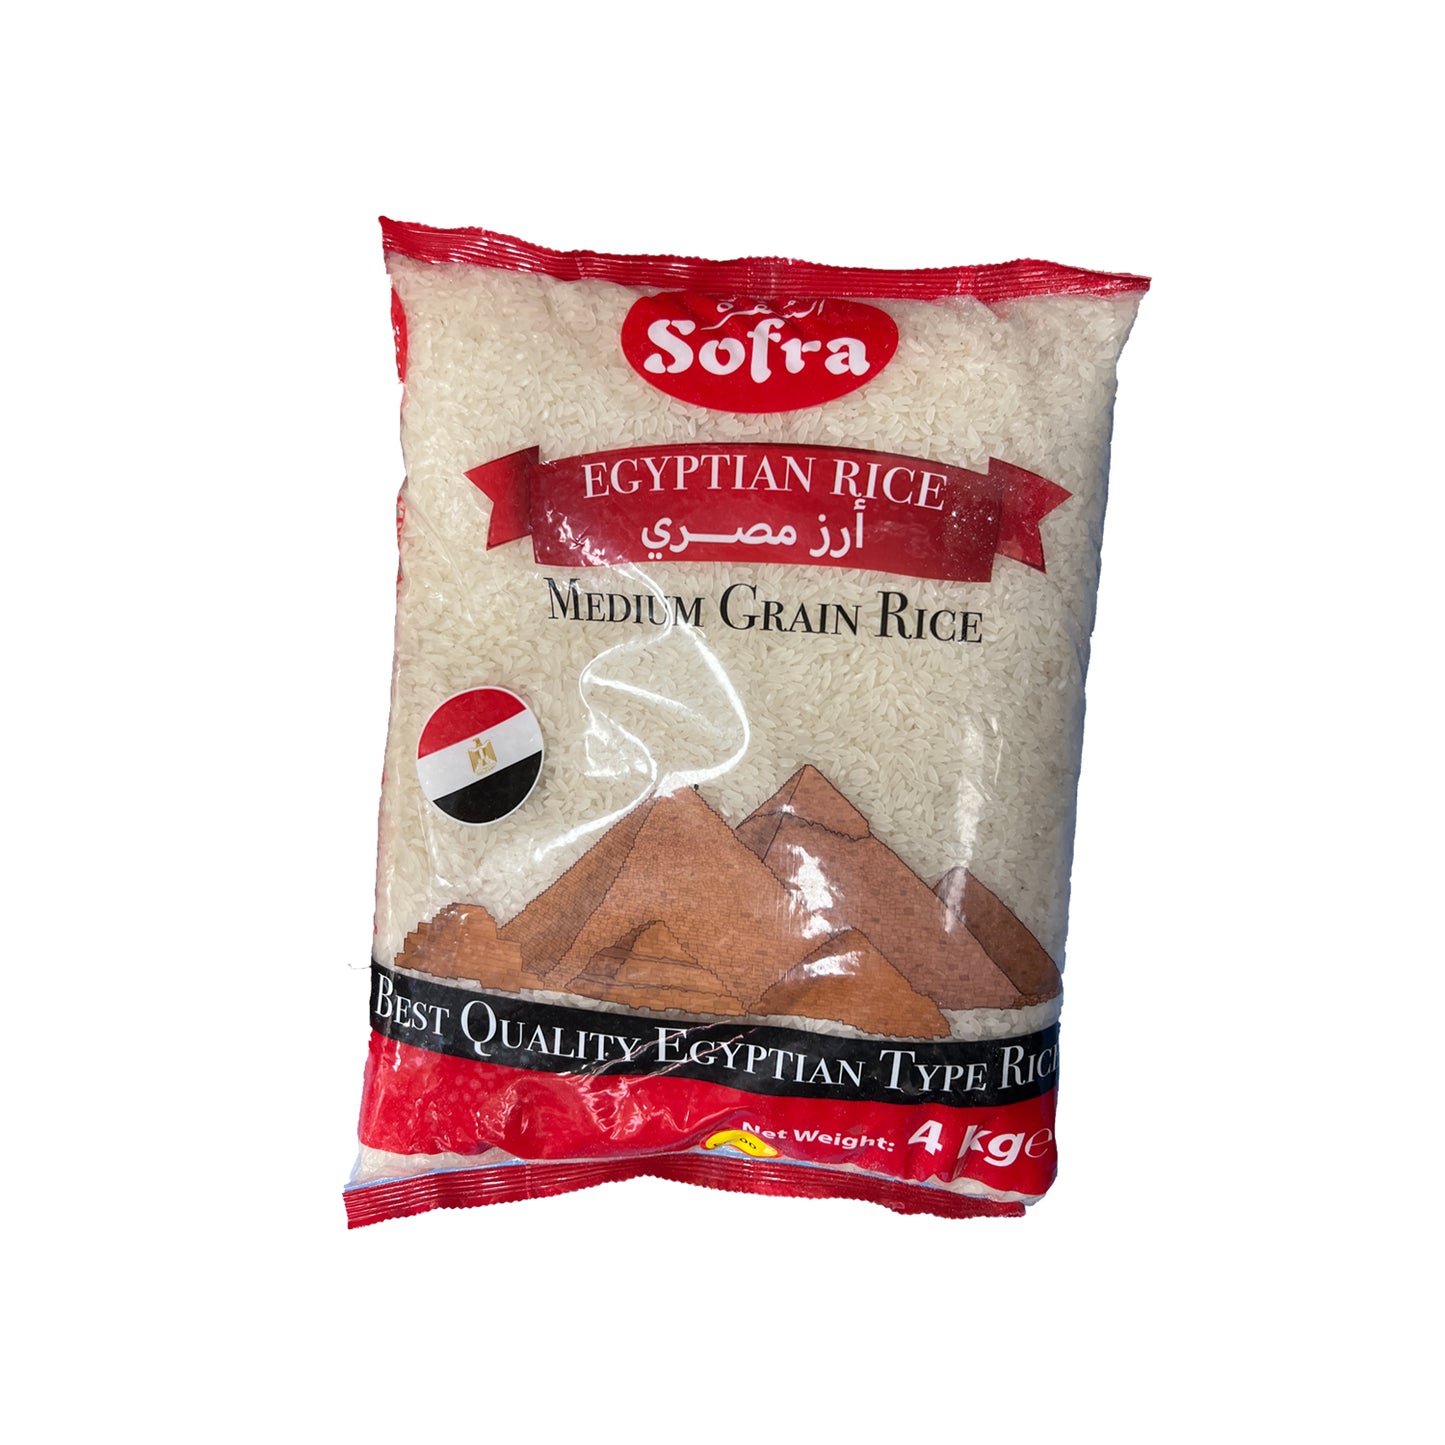 Sofra Egyptian Medium Grain Rice 4kg